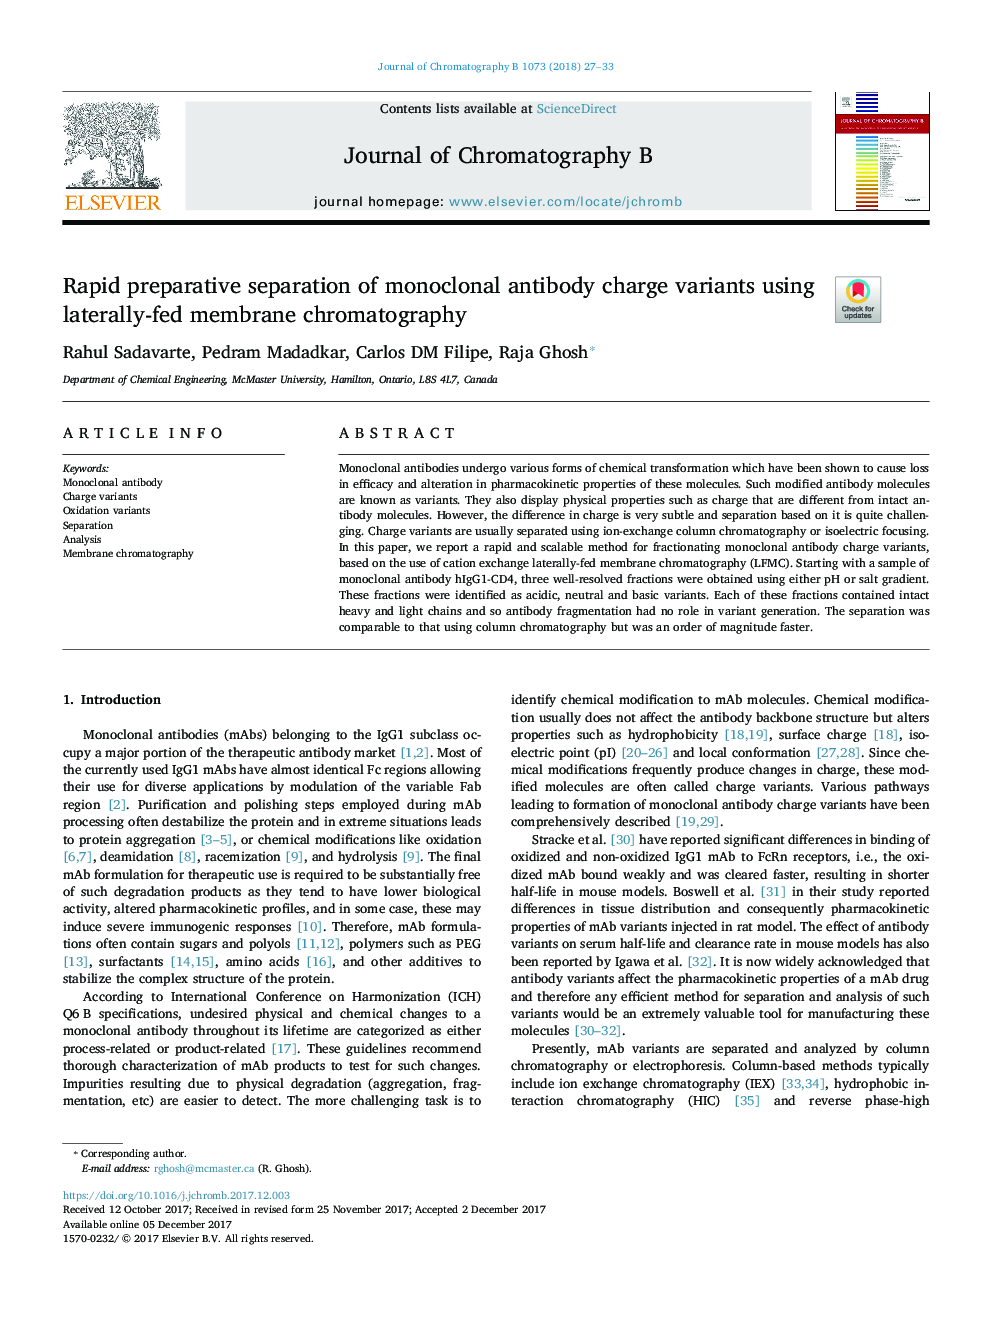 جداسازی سریع از انواع شارژ آنتی بادی مونوکلونال با استفاده از کروماتوگرافی غشاء تغذیه به روش جانبی 